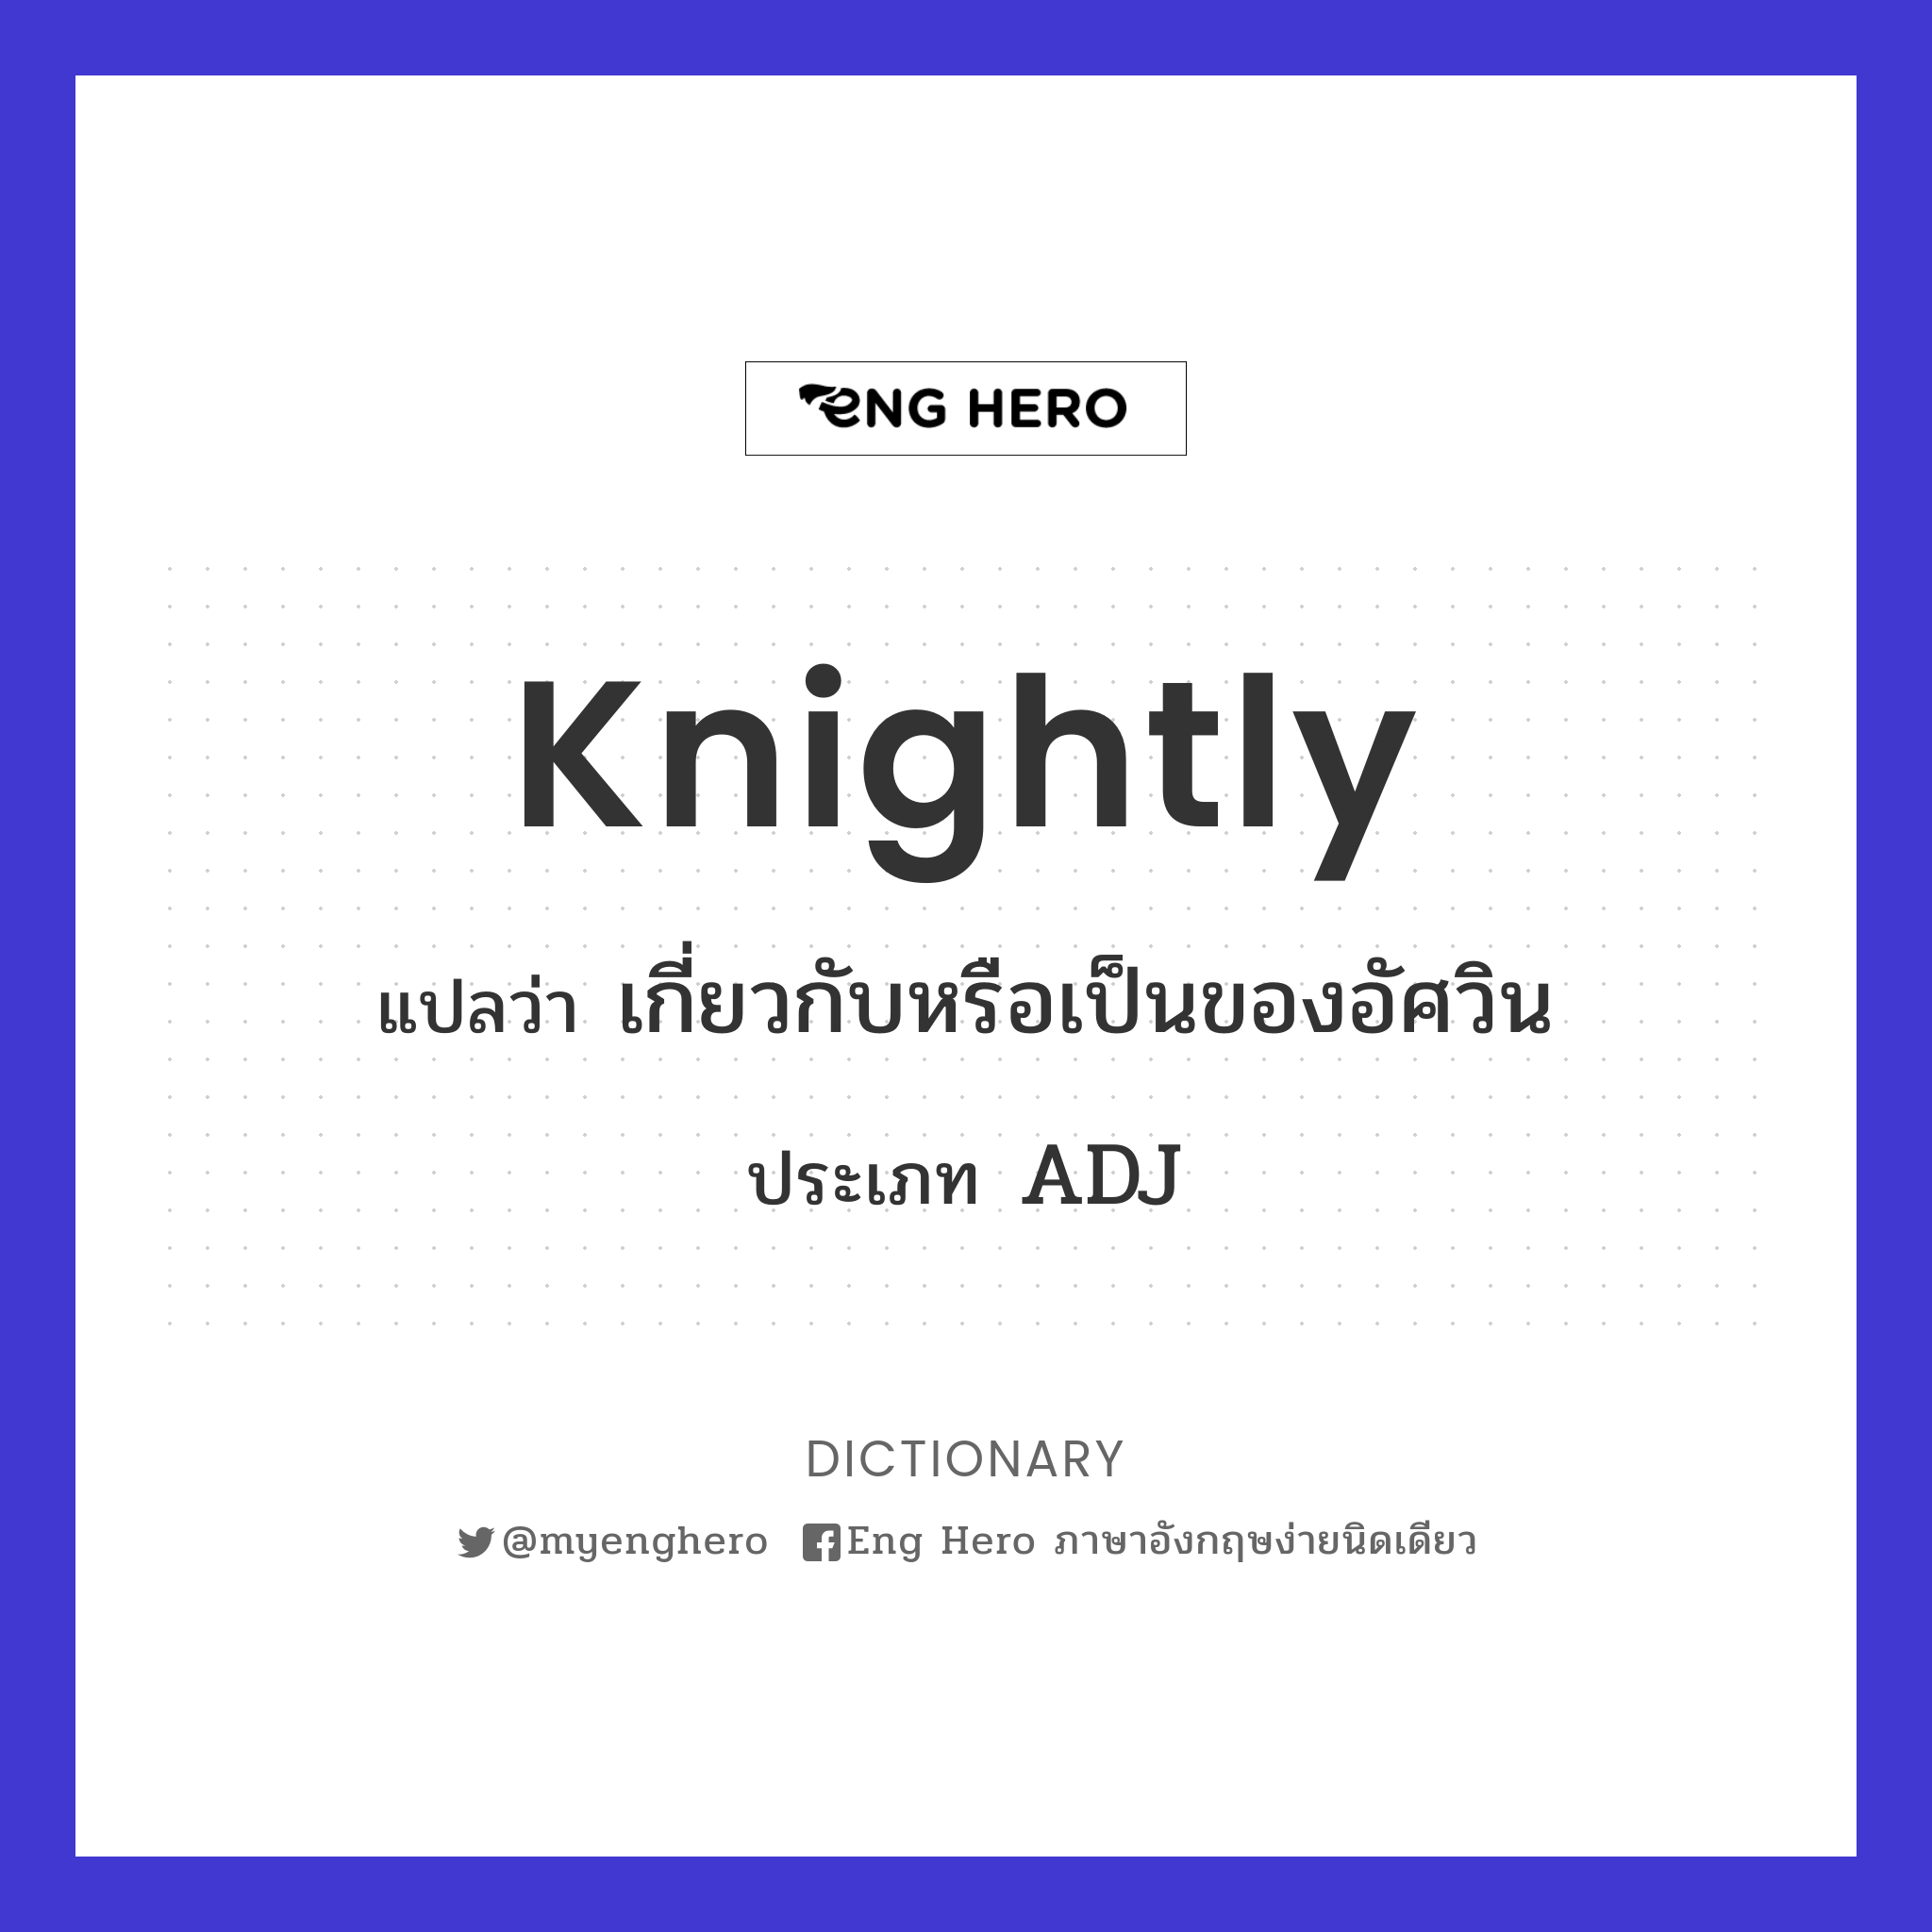 knightly